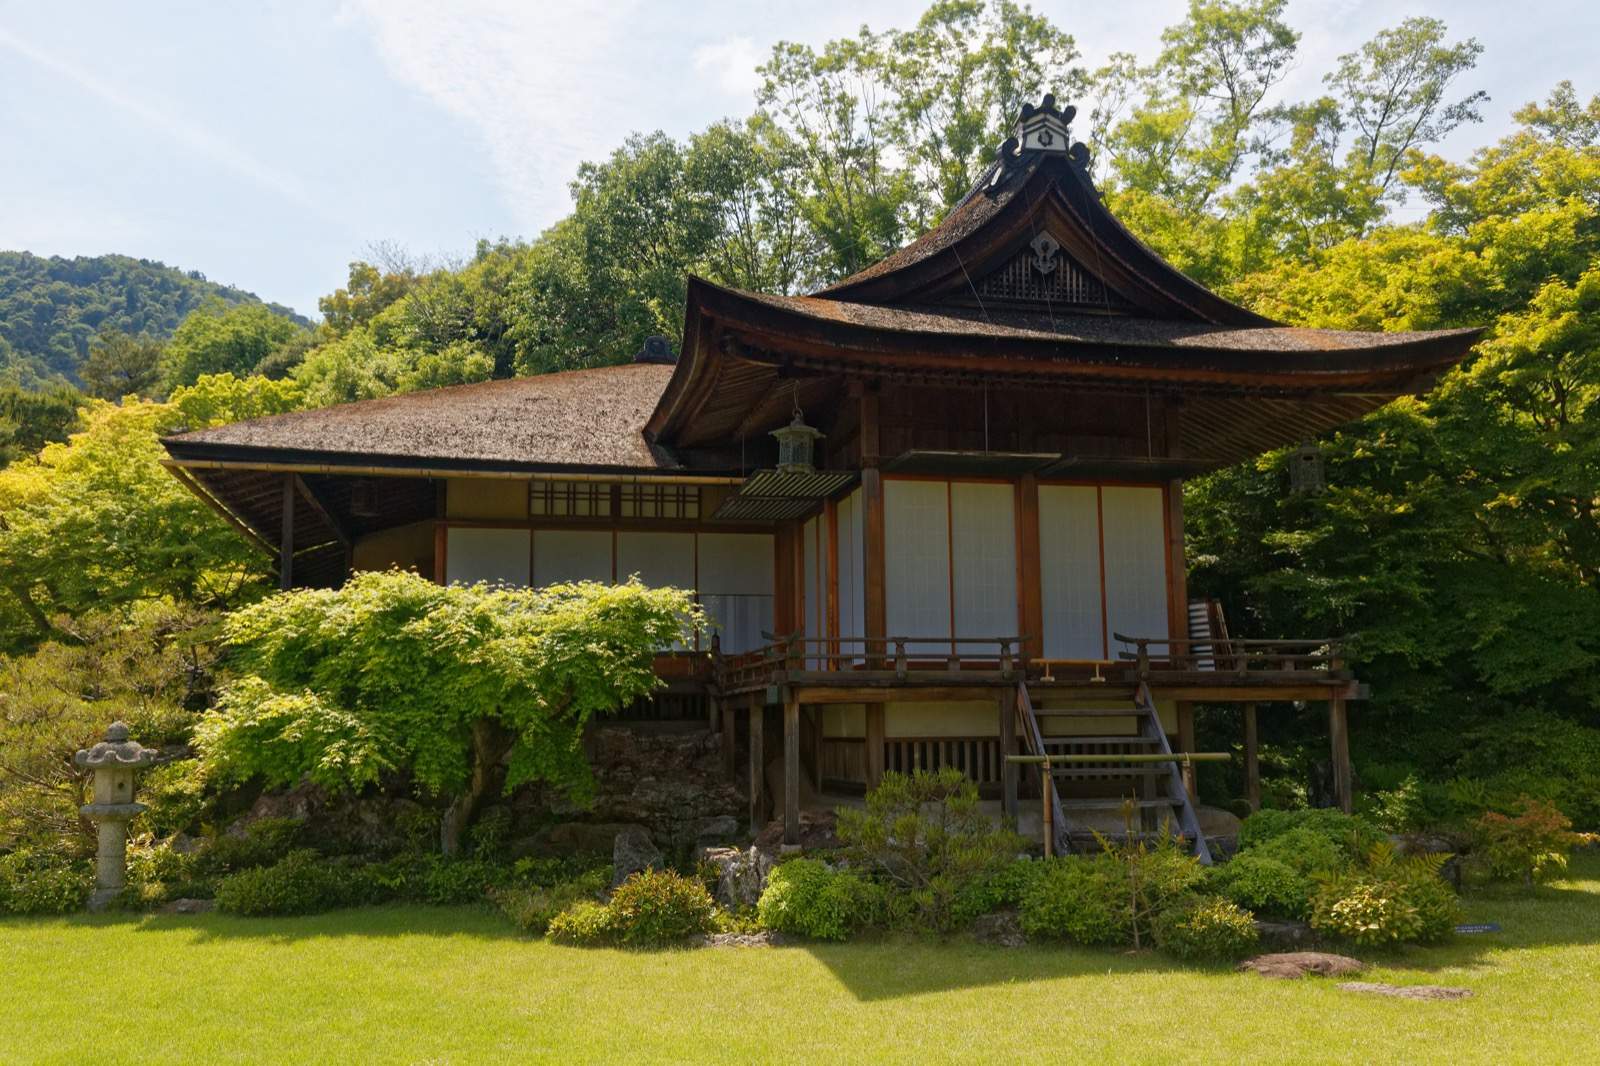 Photo of Okochi Sanso Villa, Japan (Arashiyama 5/12/18 by Kimon Berlin)